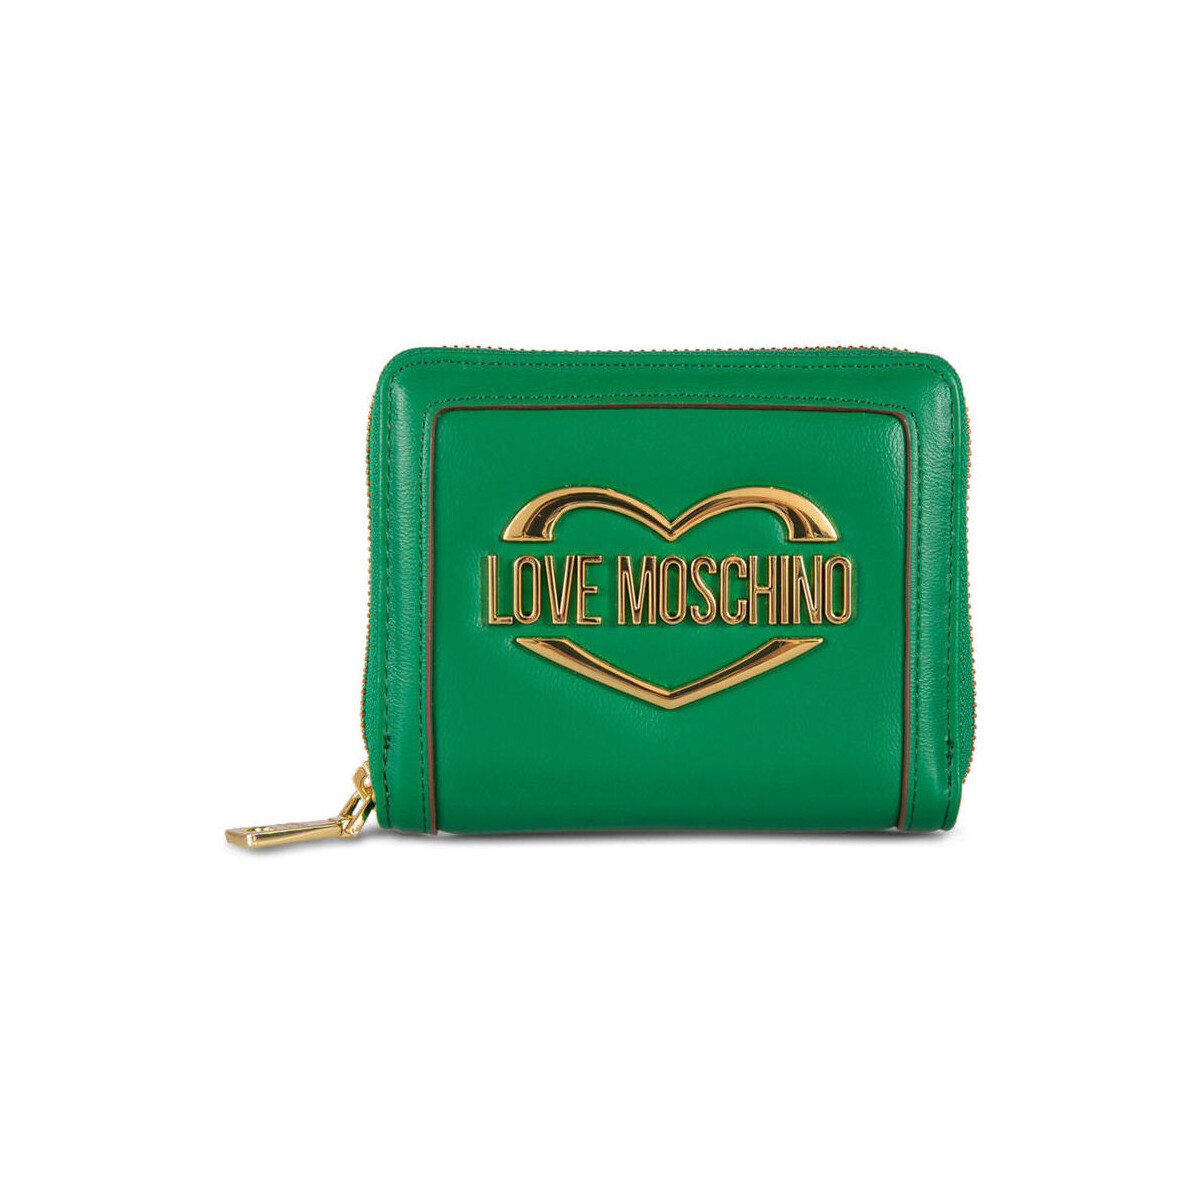 Τσάντες Γυναίκα Πορτοφόλια Love Moschino - jc5623pp1gld1 Green